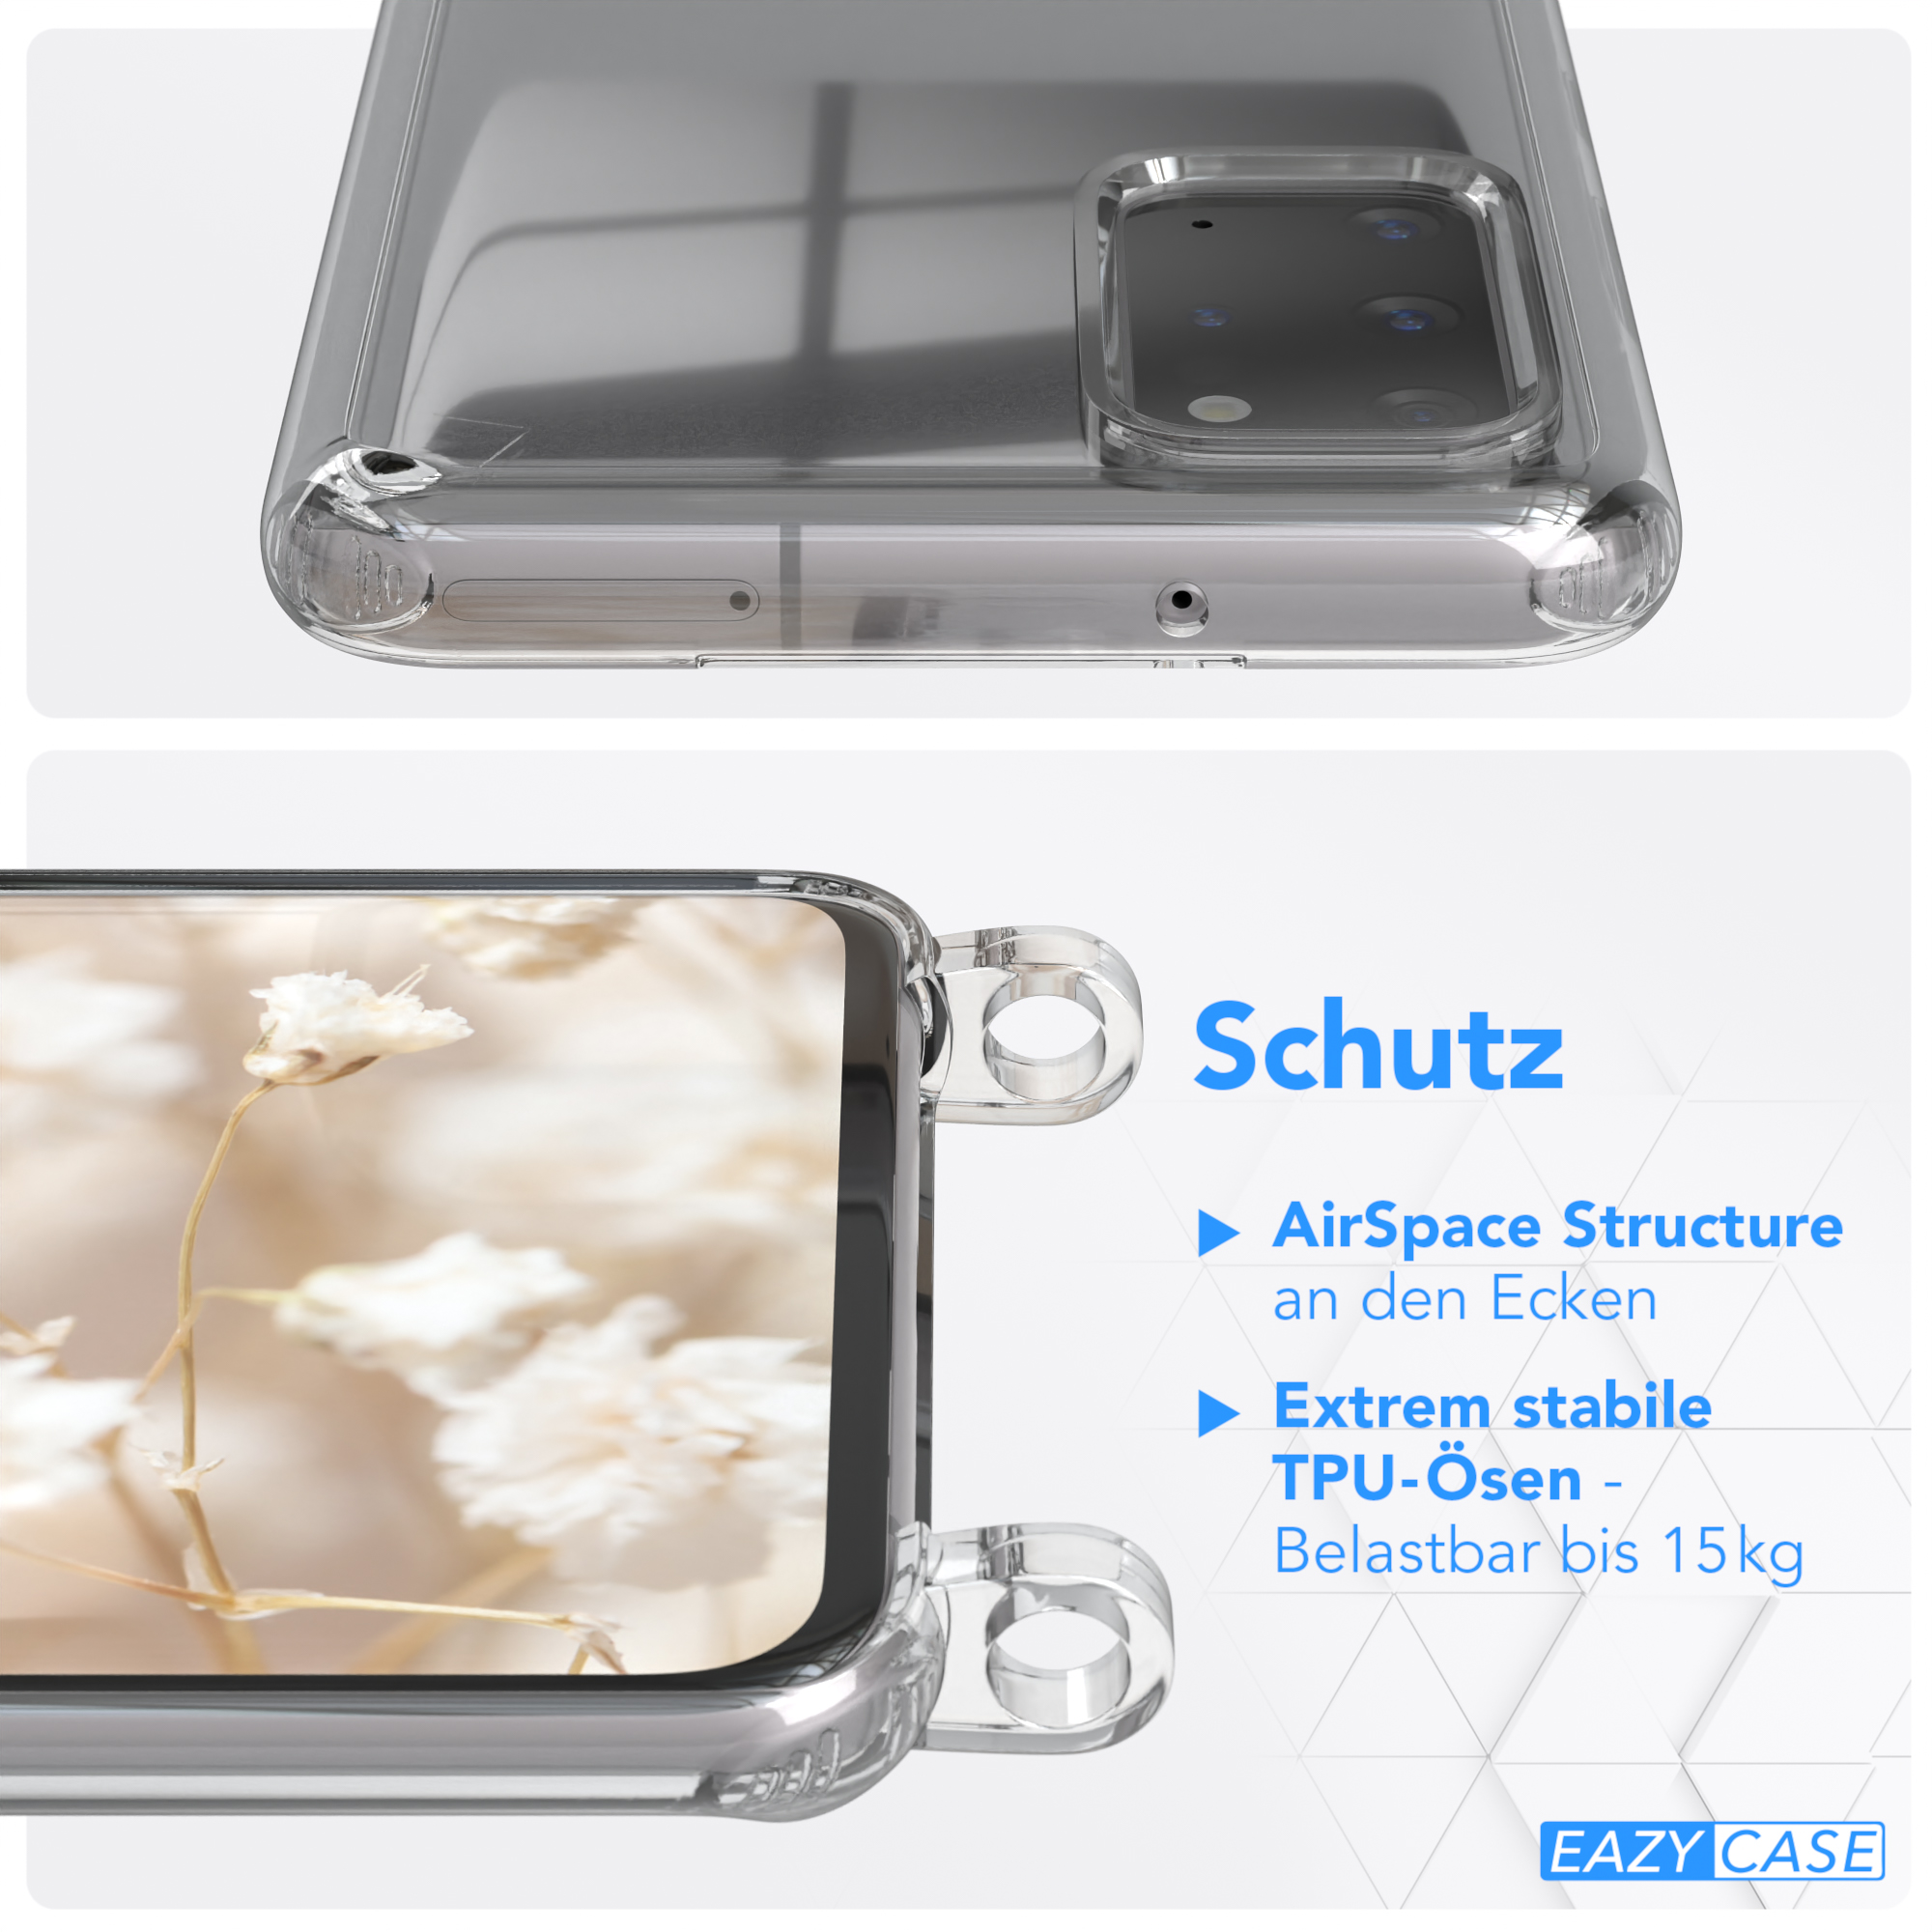 Kordel / Style, / Umhängetasche, Galaxy EAZY Transparente Boho S20 Braun mit Handyhülle Samsung, Rot 5G, Plus Plus S20 CASE